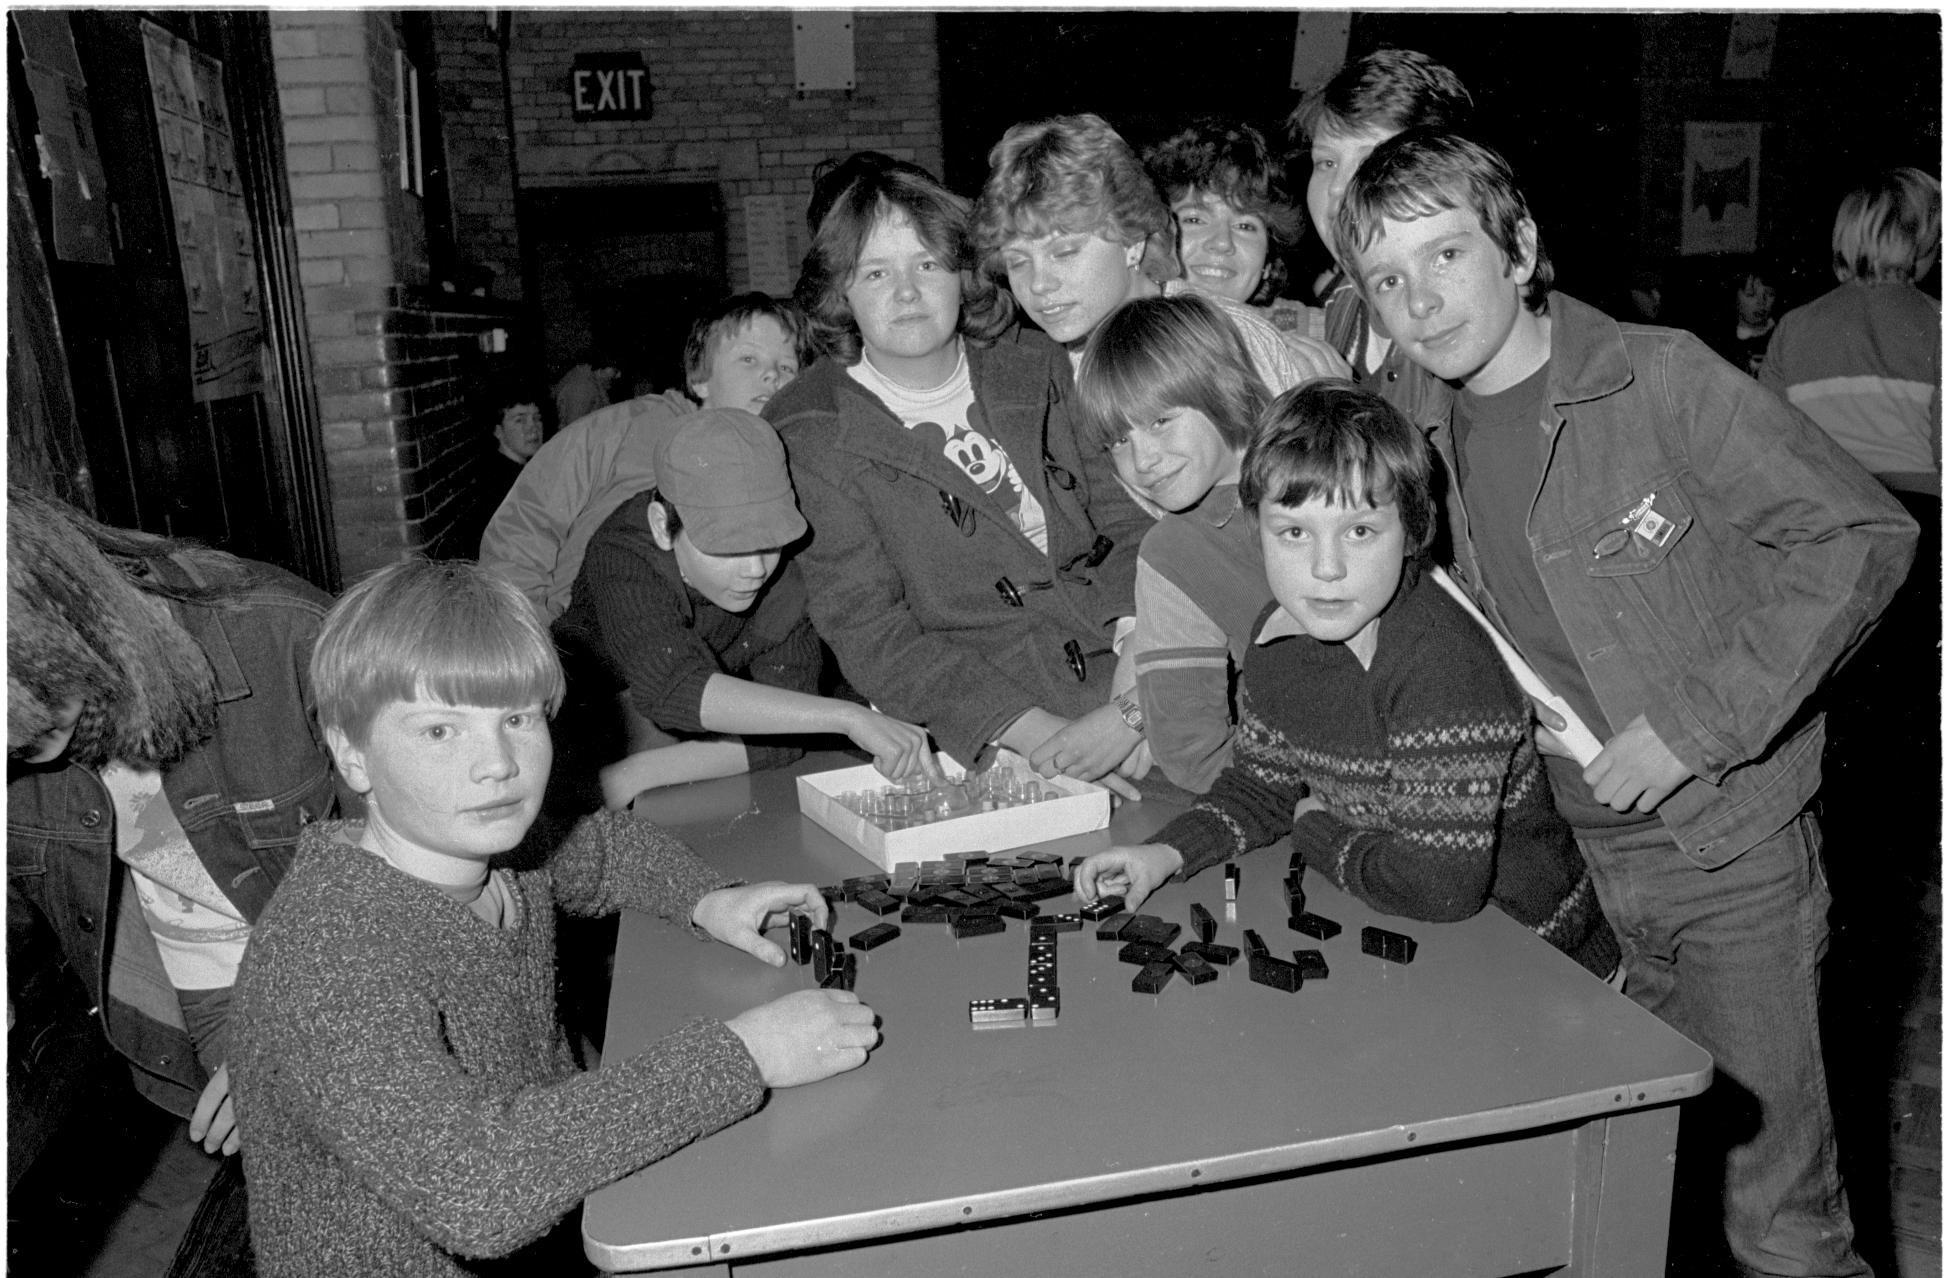 Children at Weston Rhyn Youth Club in 1983.